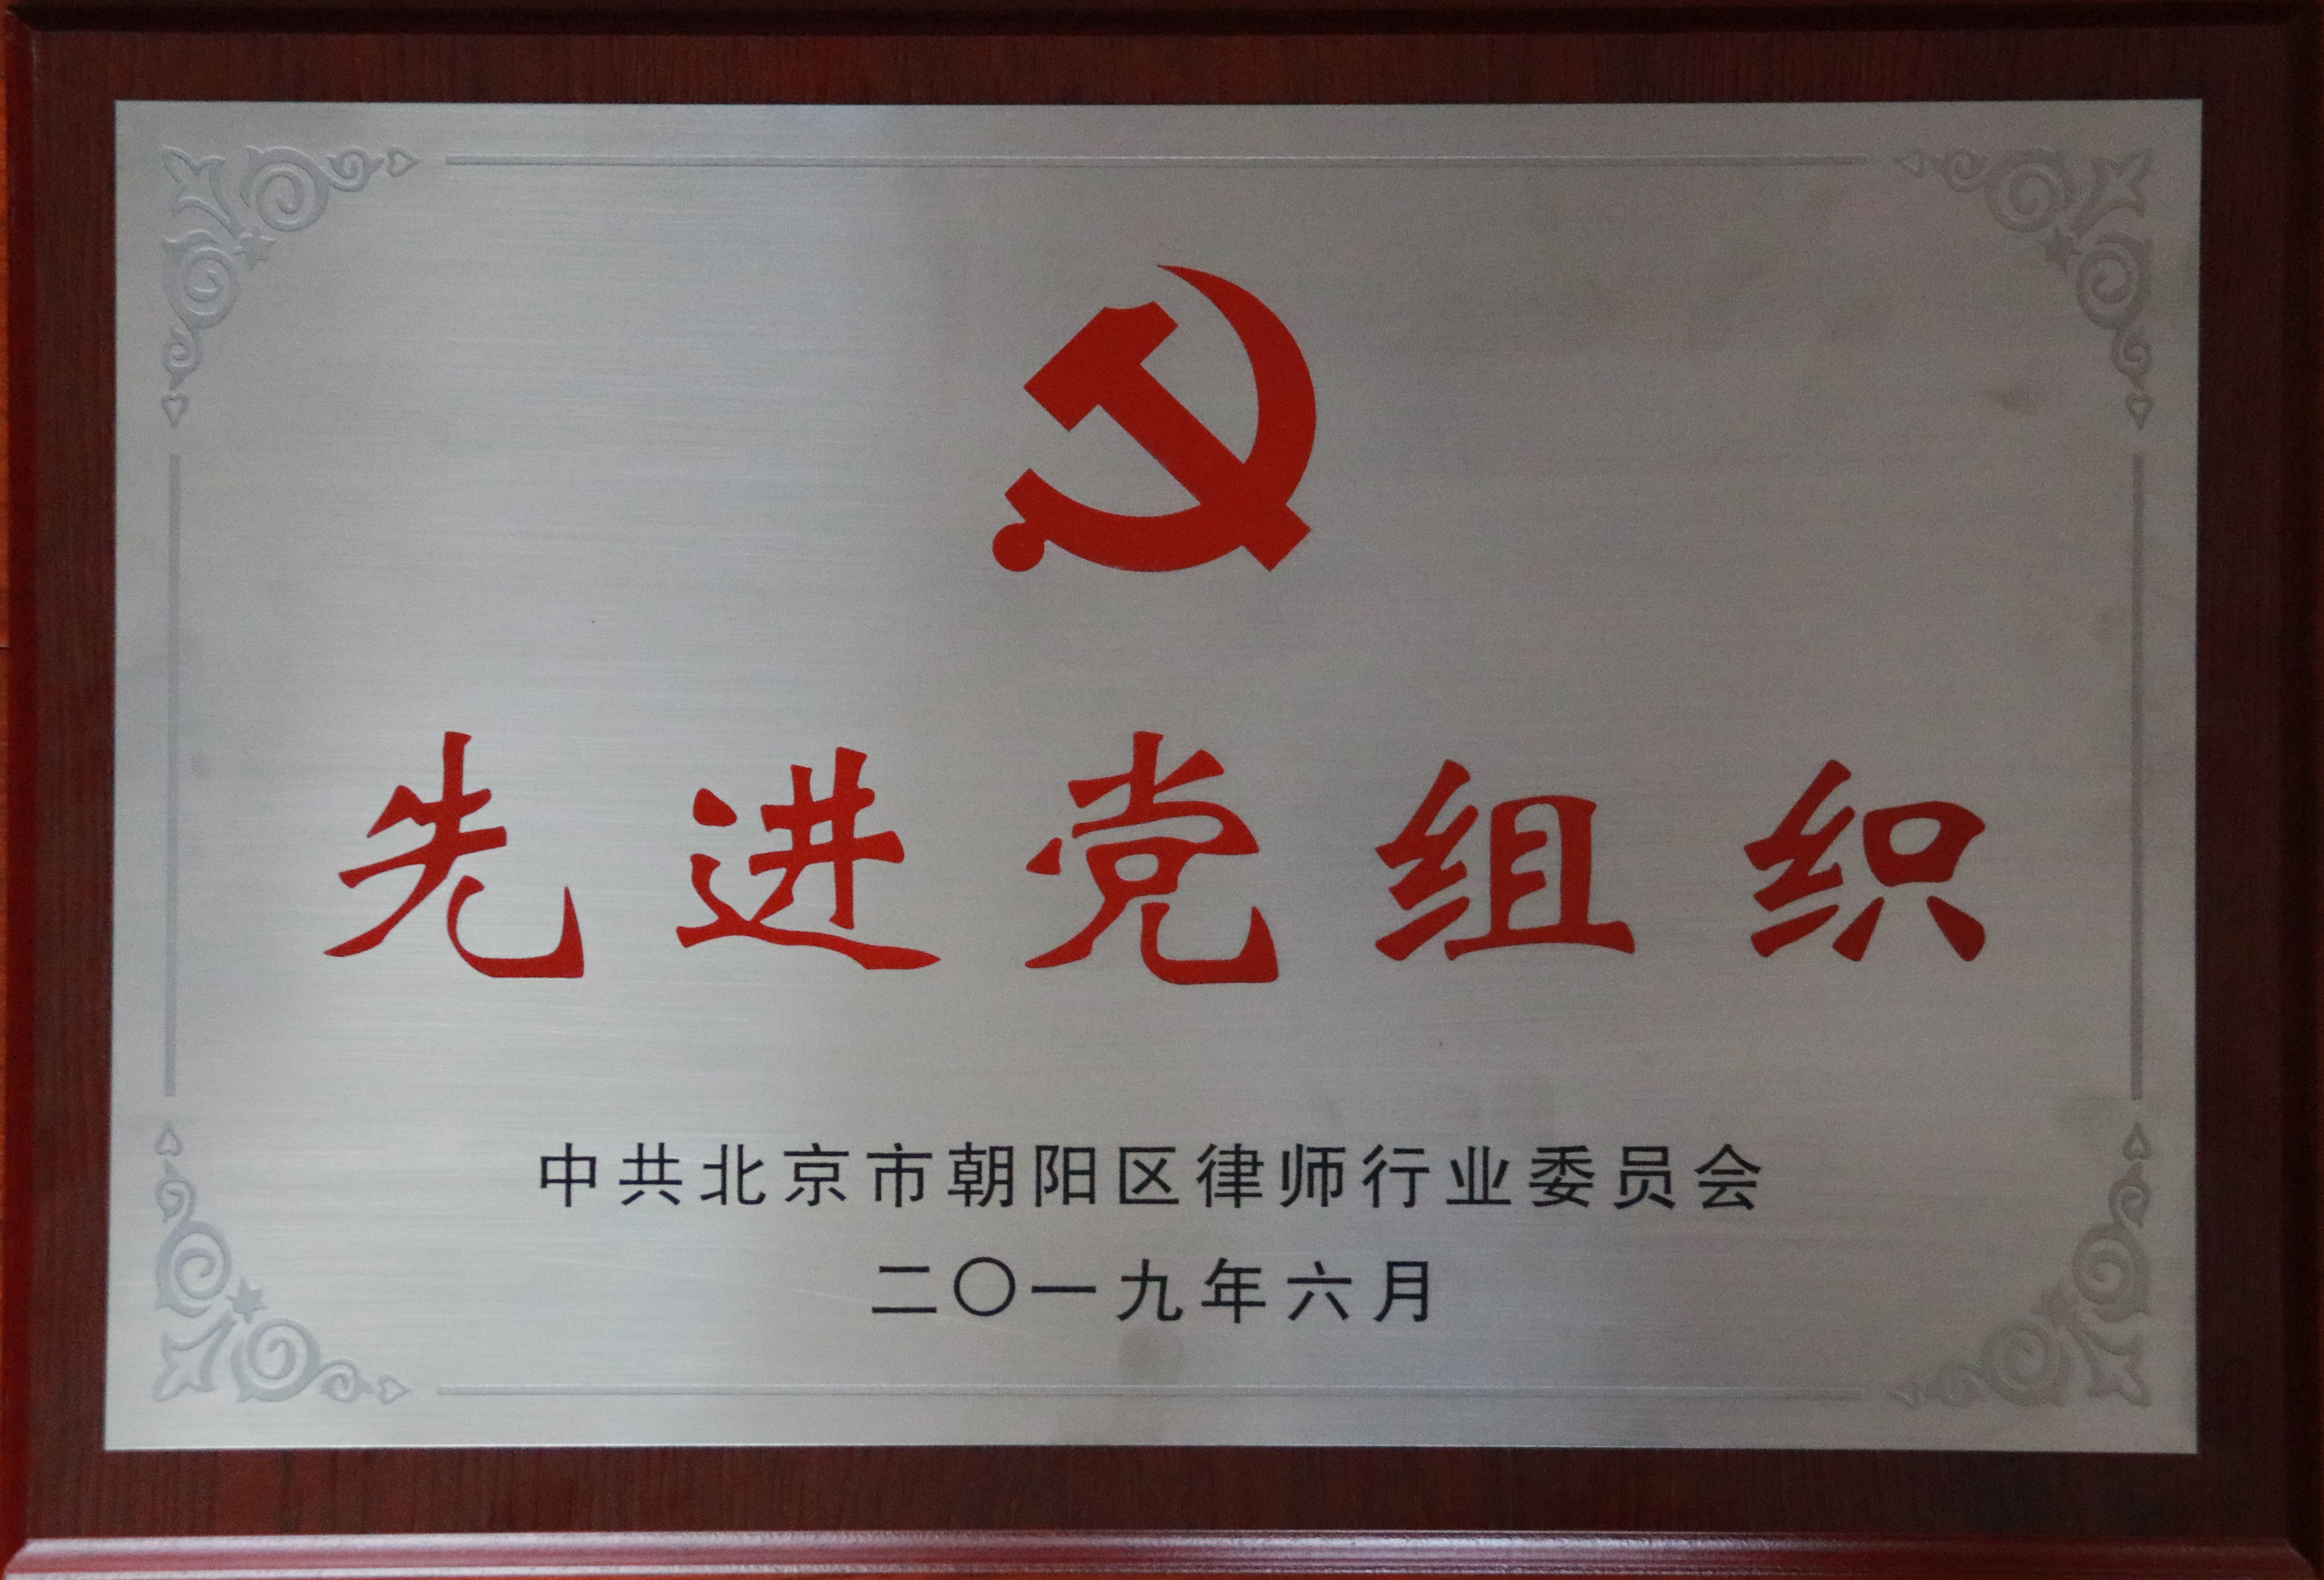 中共北京市朝阳区律师行业委员会